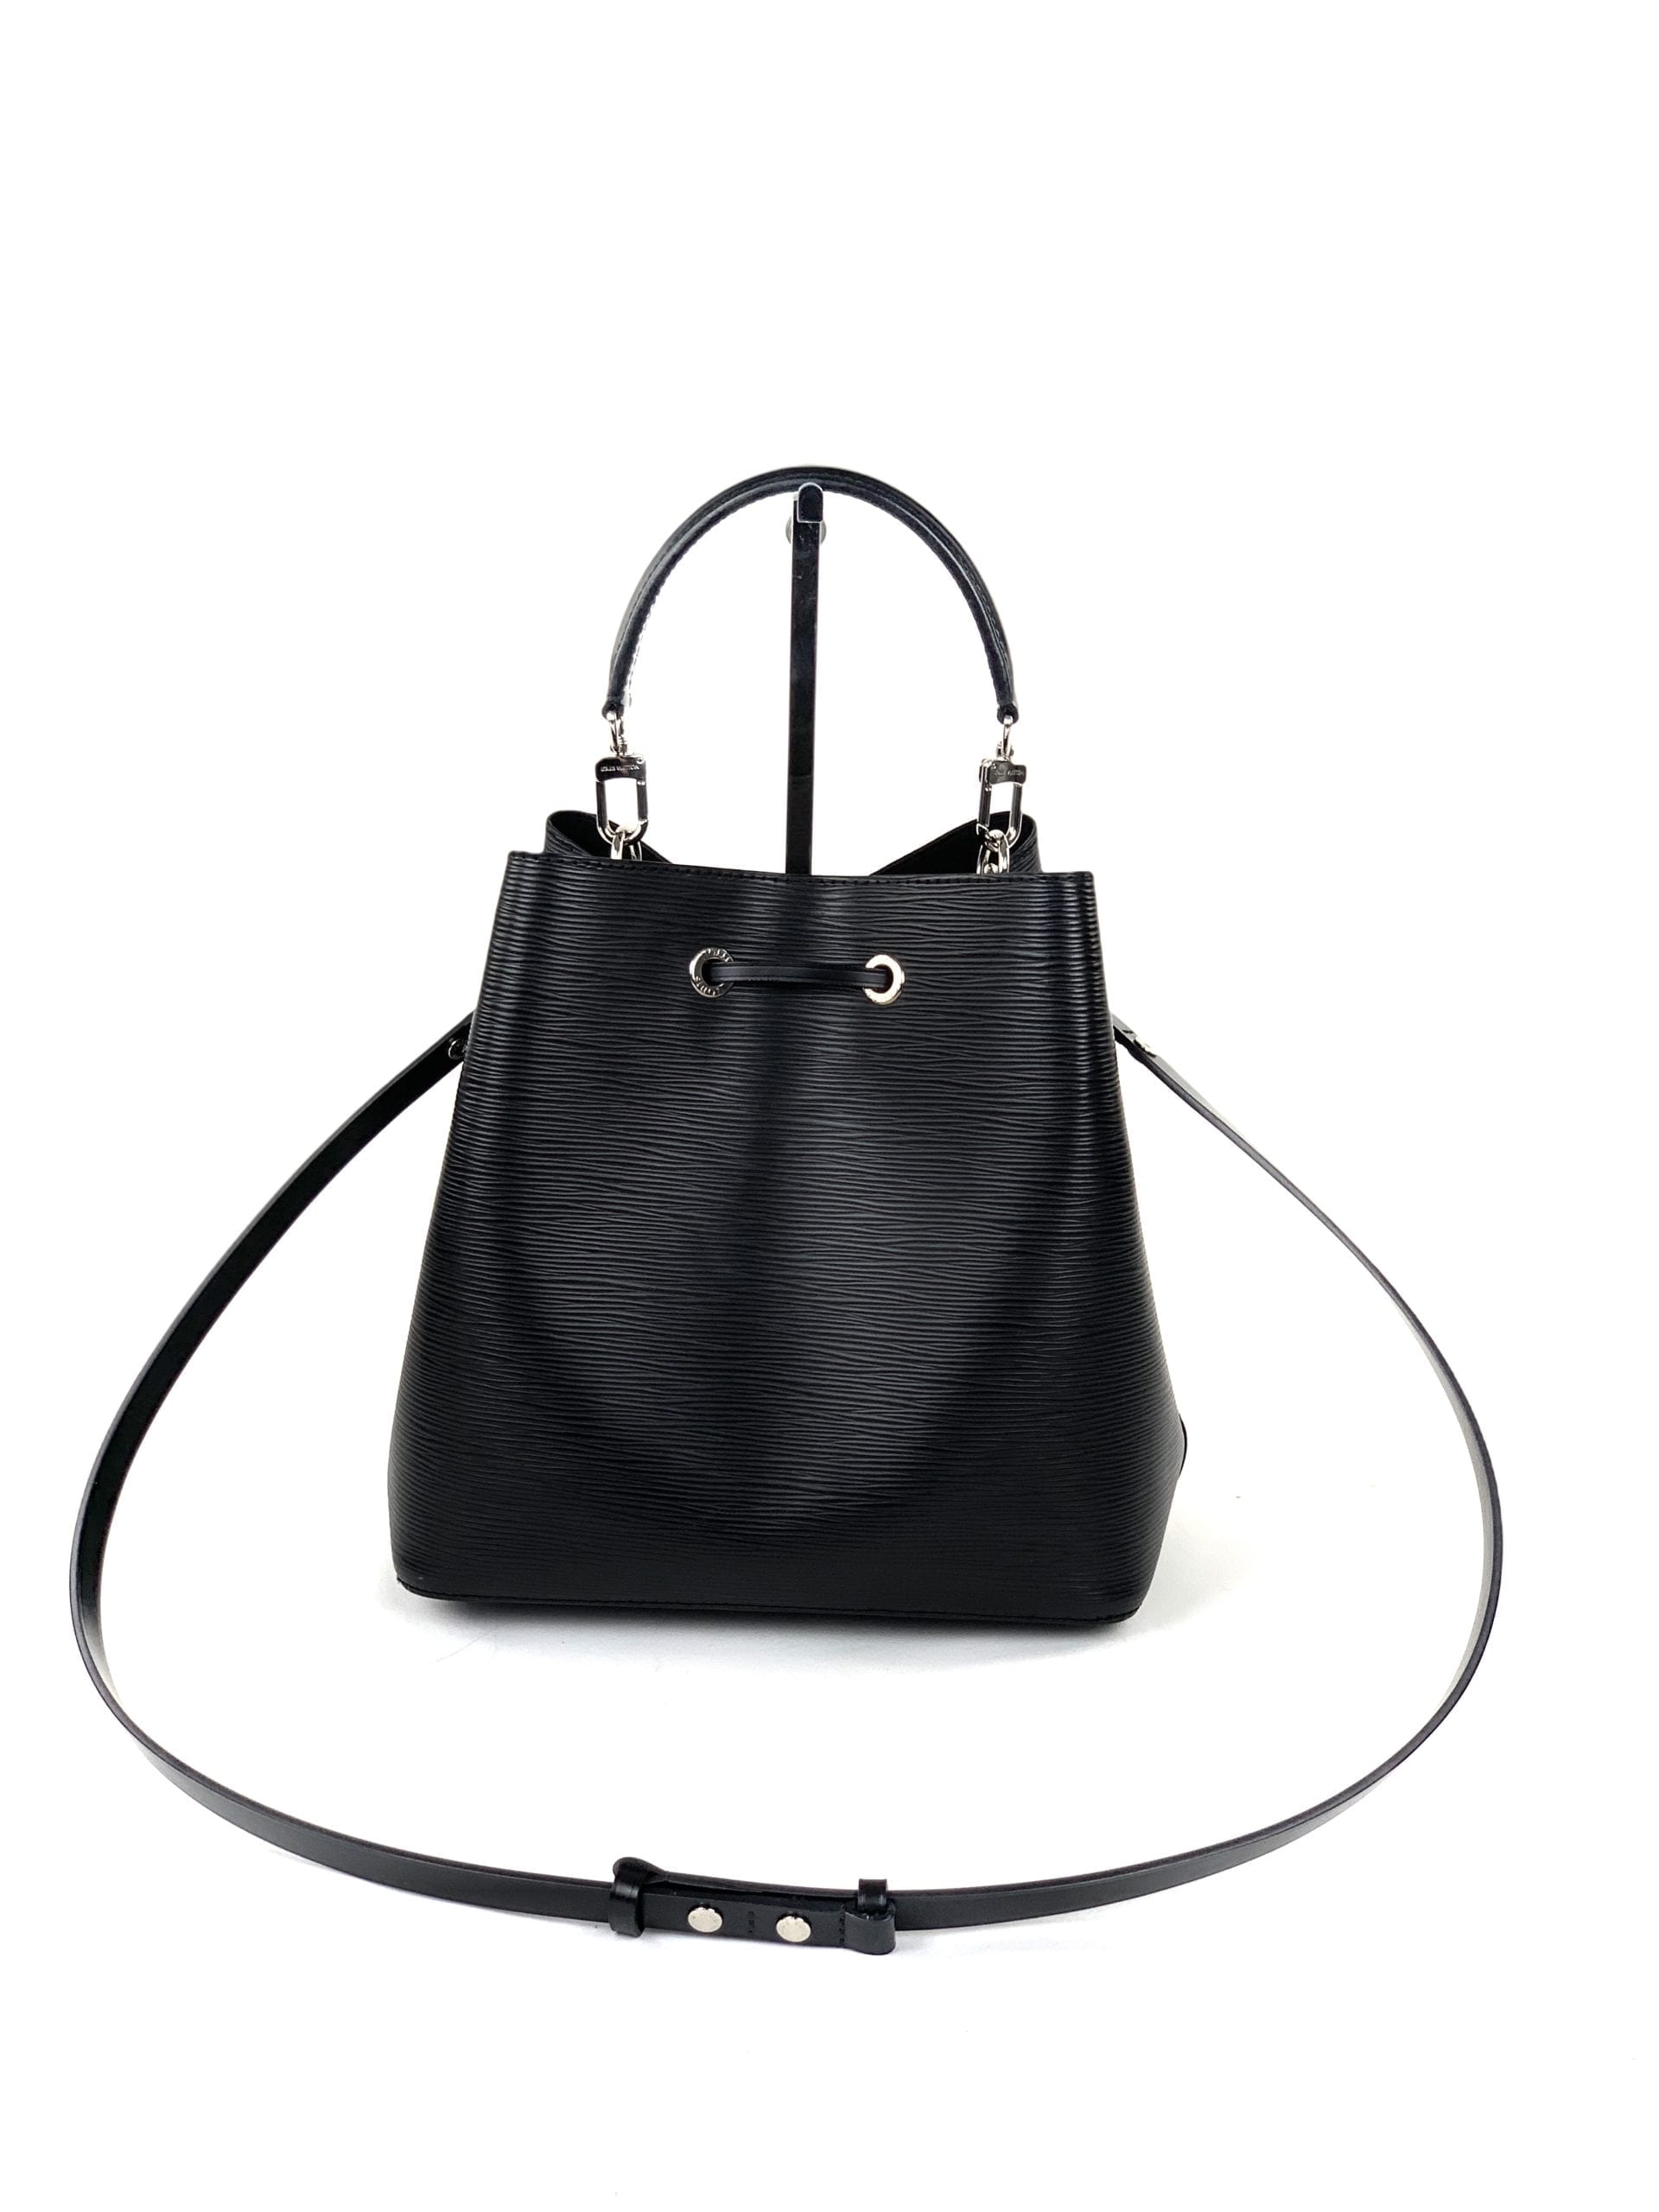 LOUIS VUITTON Neonoé bag in black epis leather, sliding…